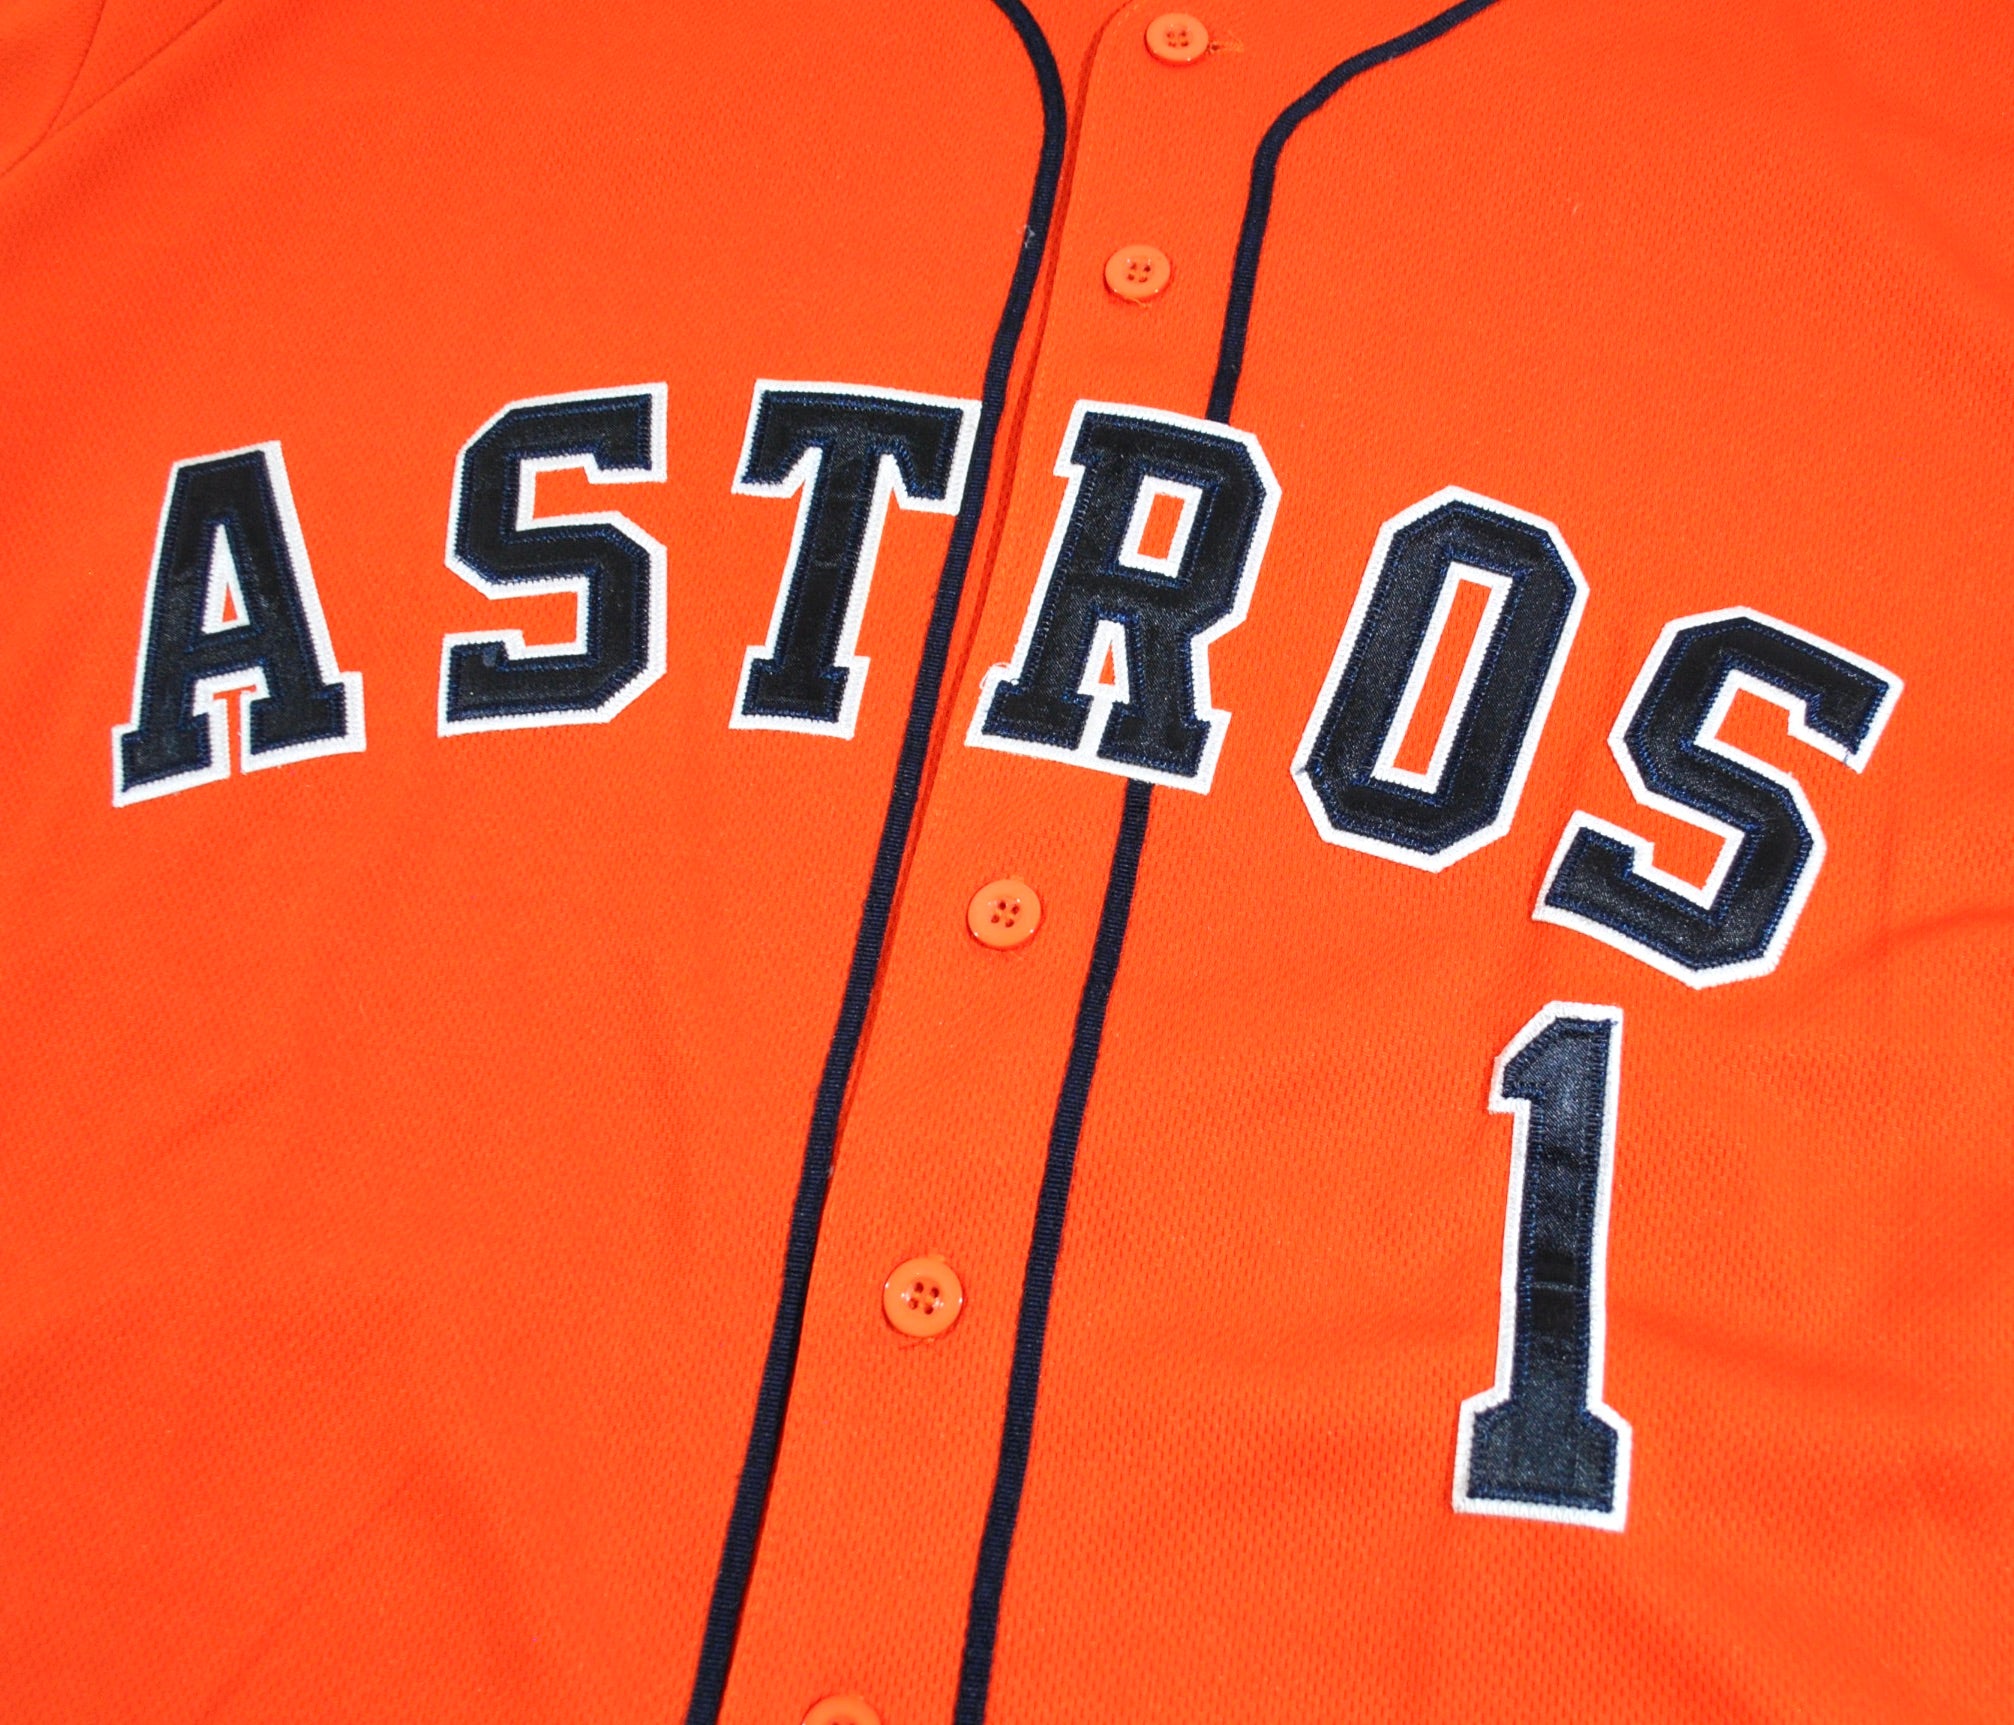 astros world series orange jersey